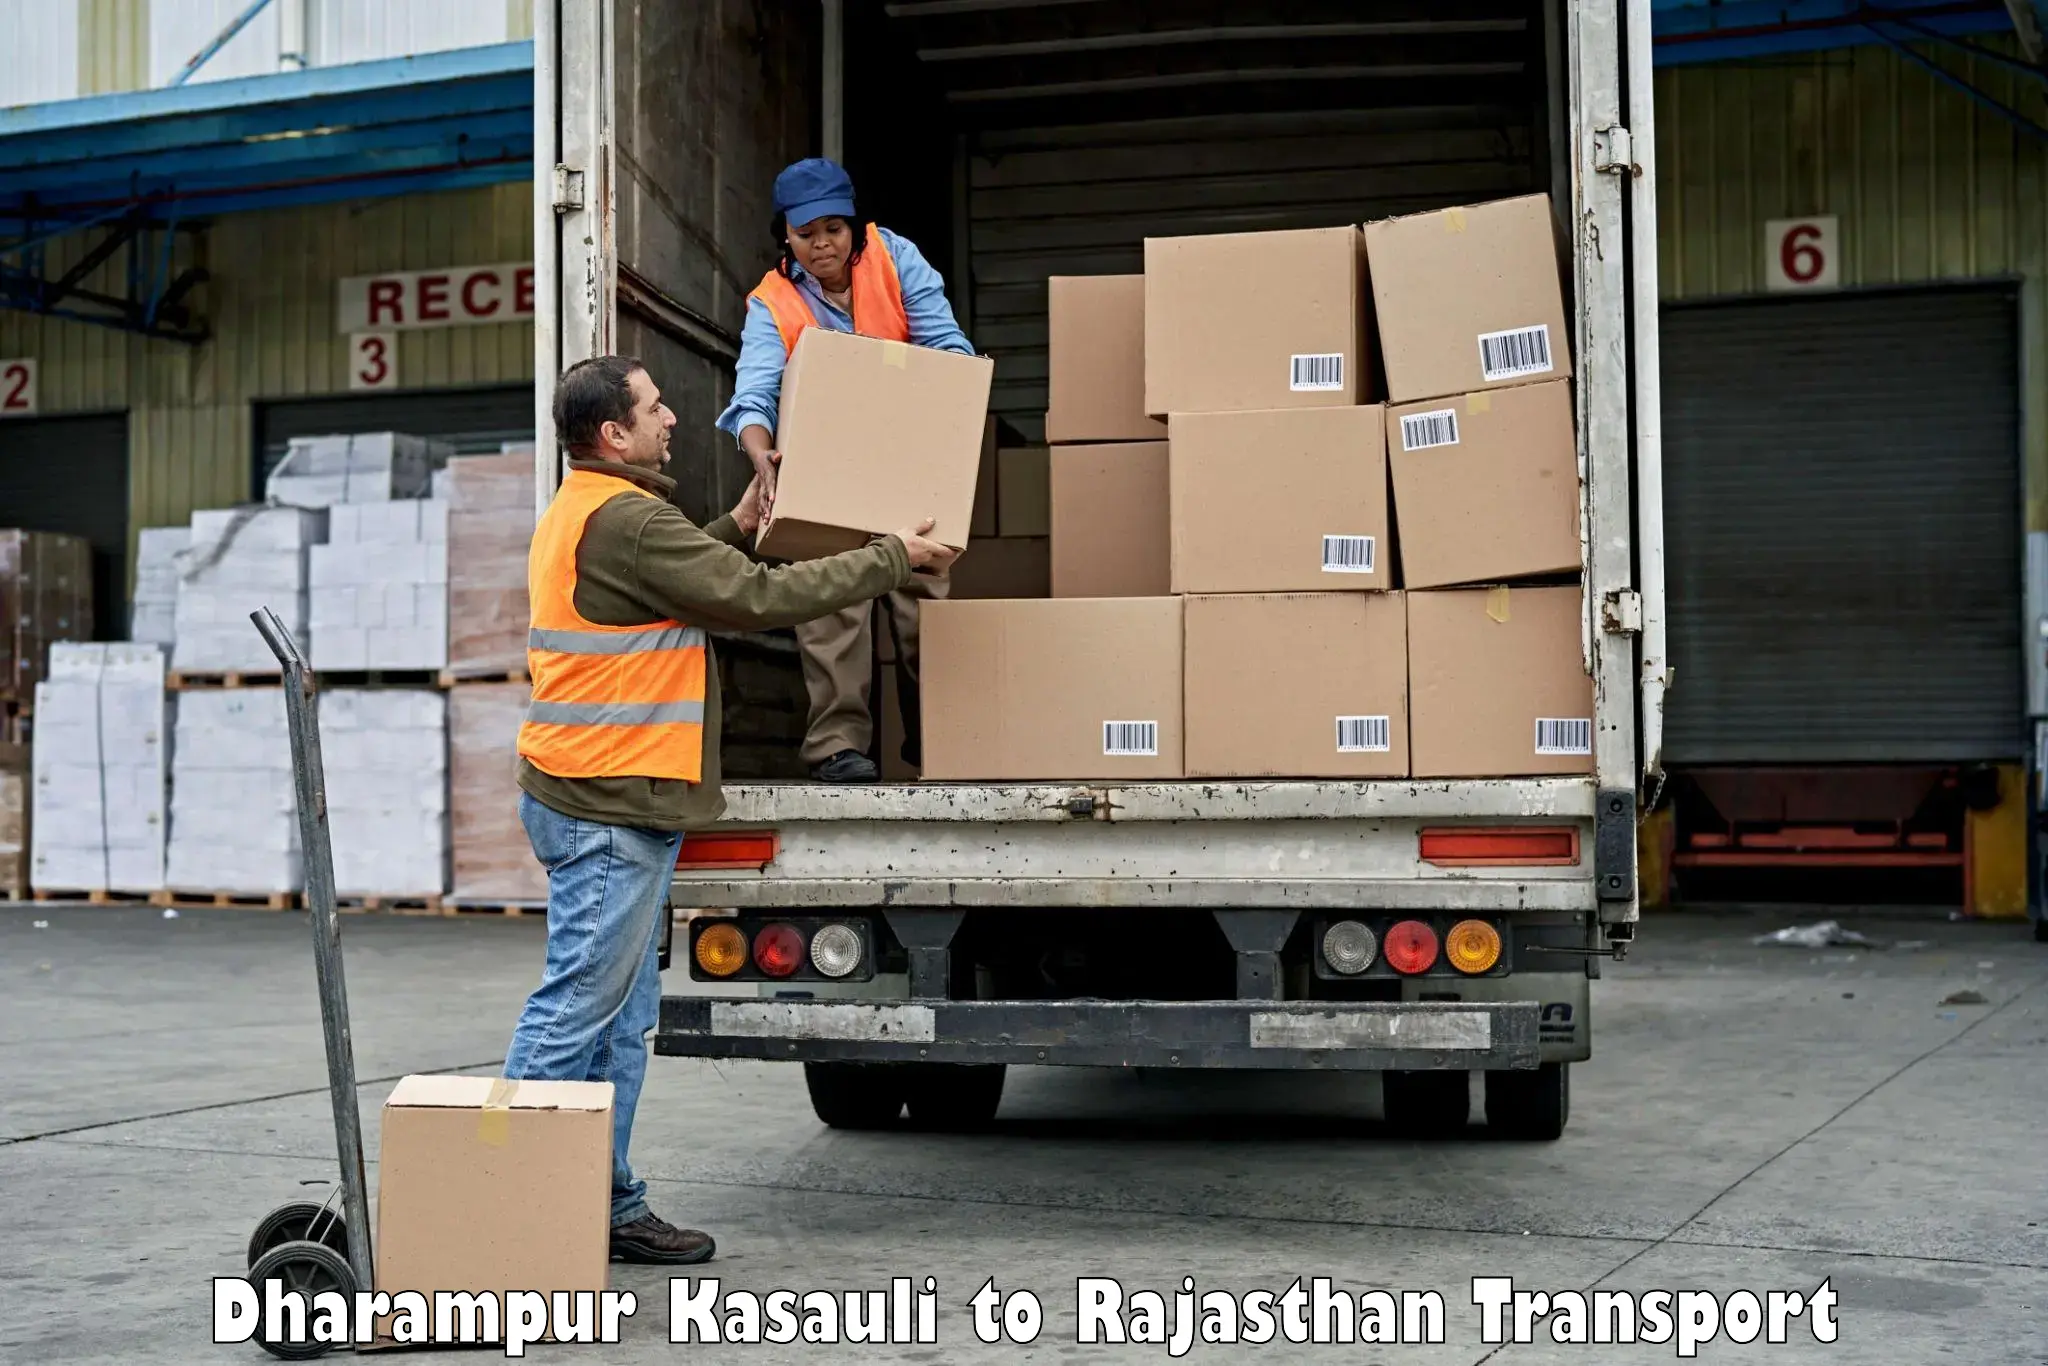 Furniture transport service Dharampur Kasauli to Karauli